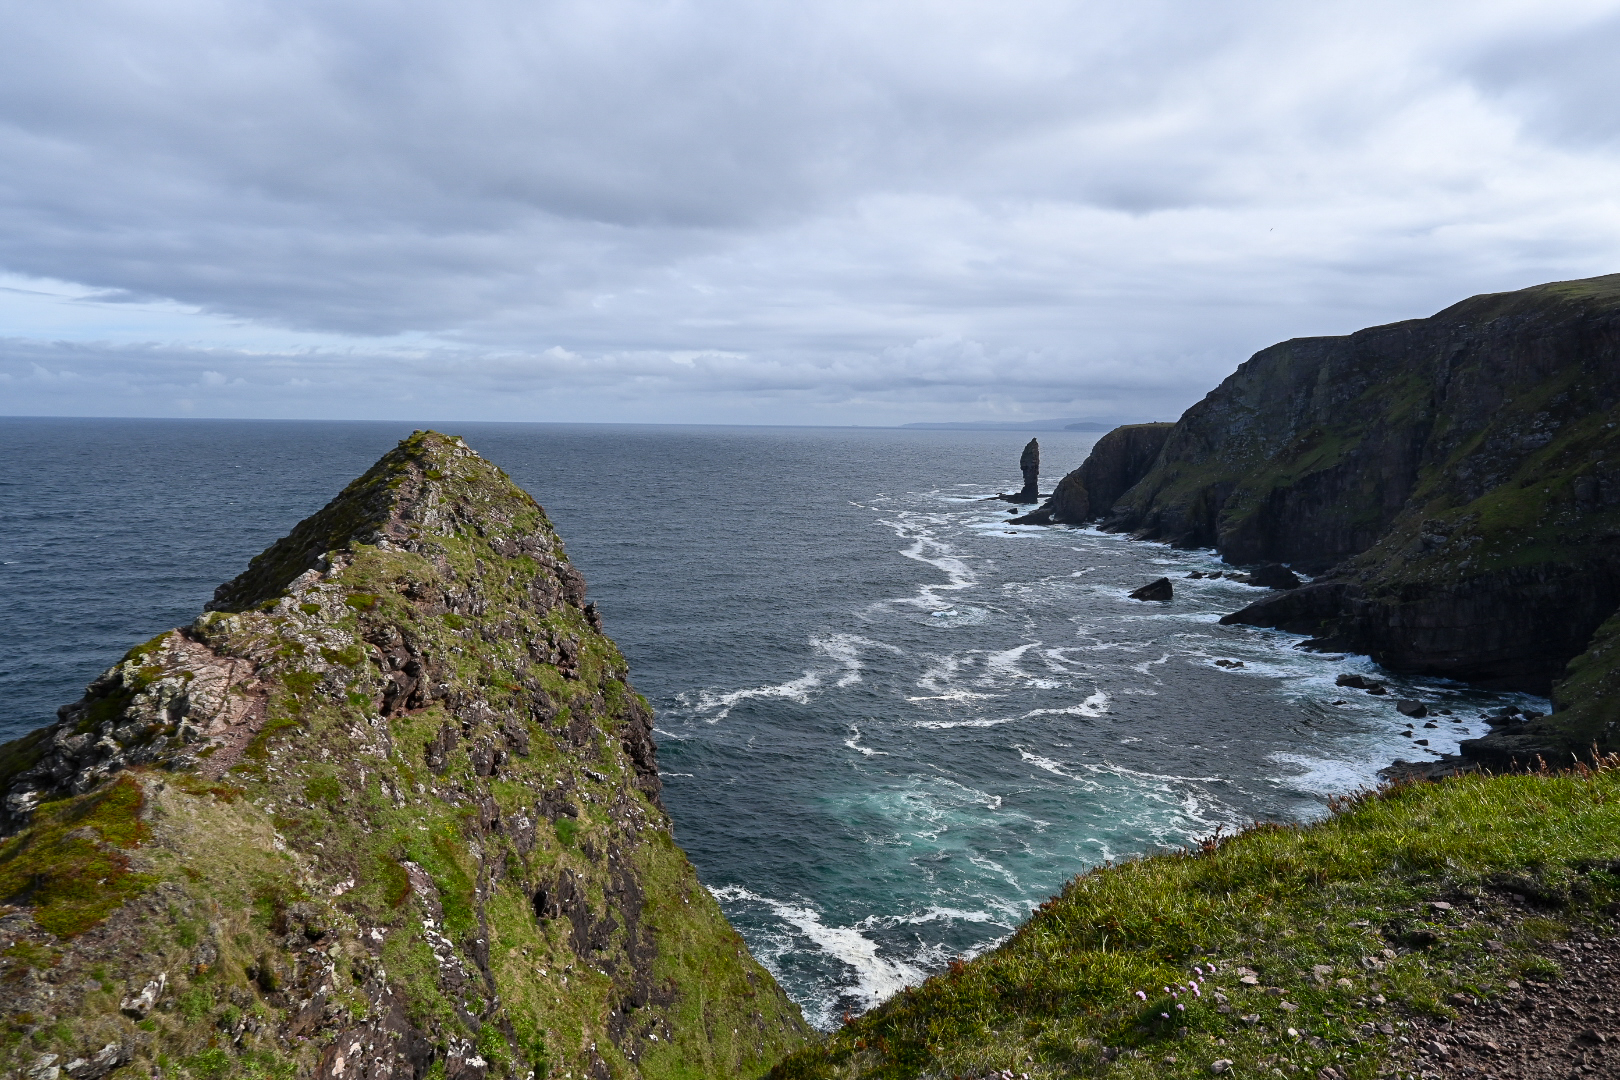 Old Man of Stoer, Schottland. Felsformation, die aus dem Meer ragt, umgeben von Klippen